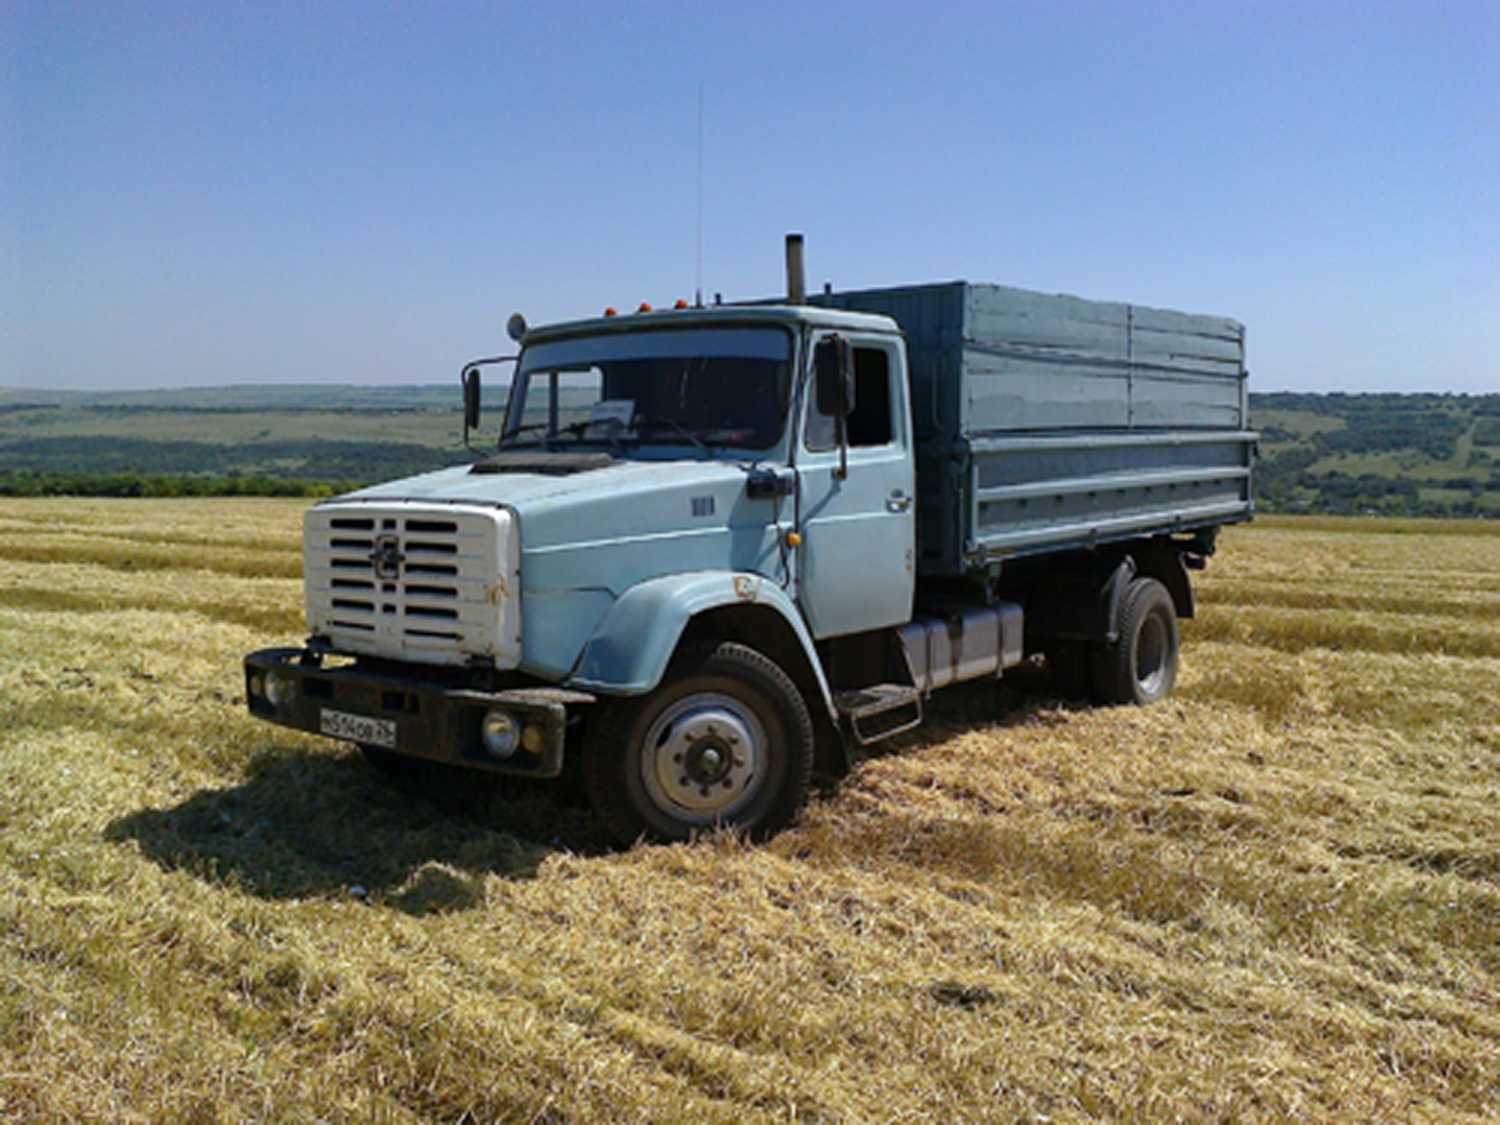 Технические характеристики грузовика зил-4333 и аналогичные среднетоннажные автомобили